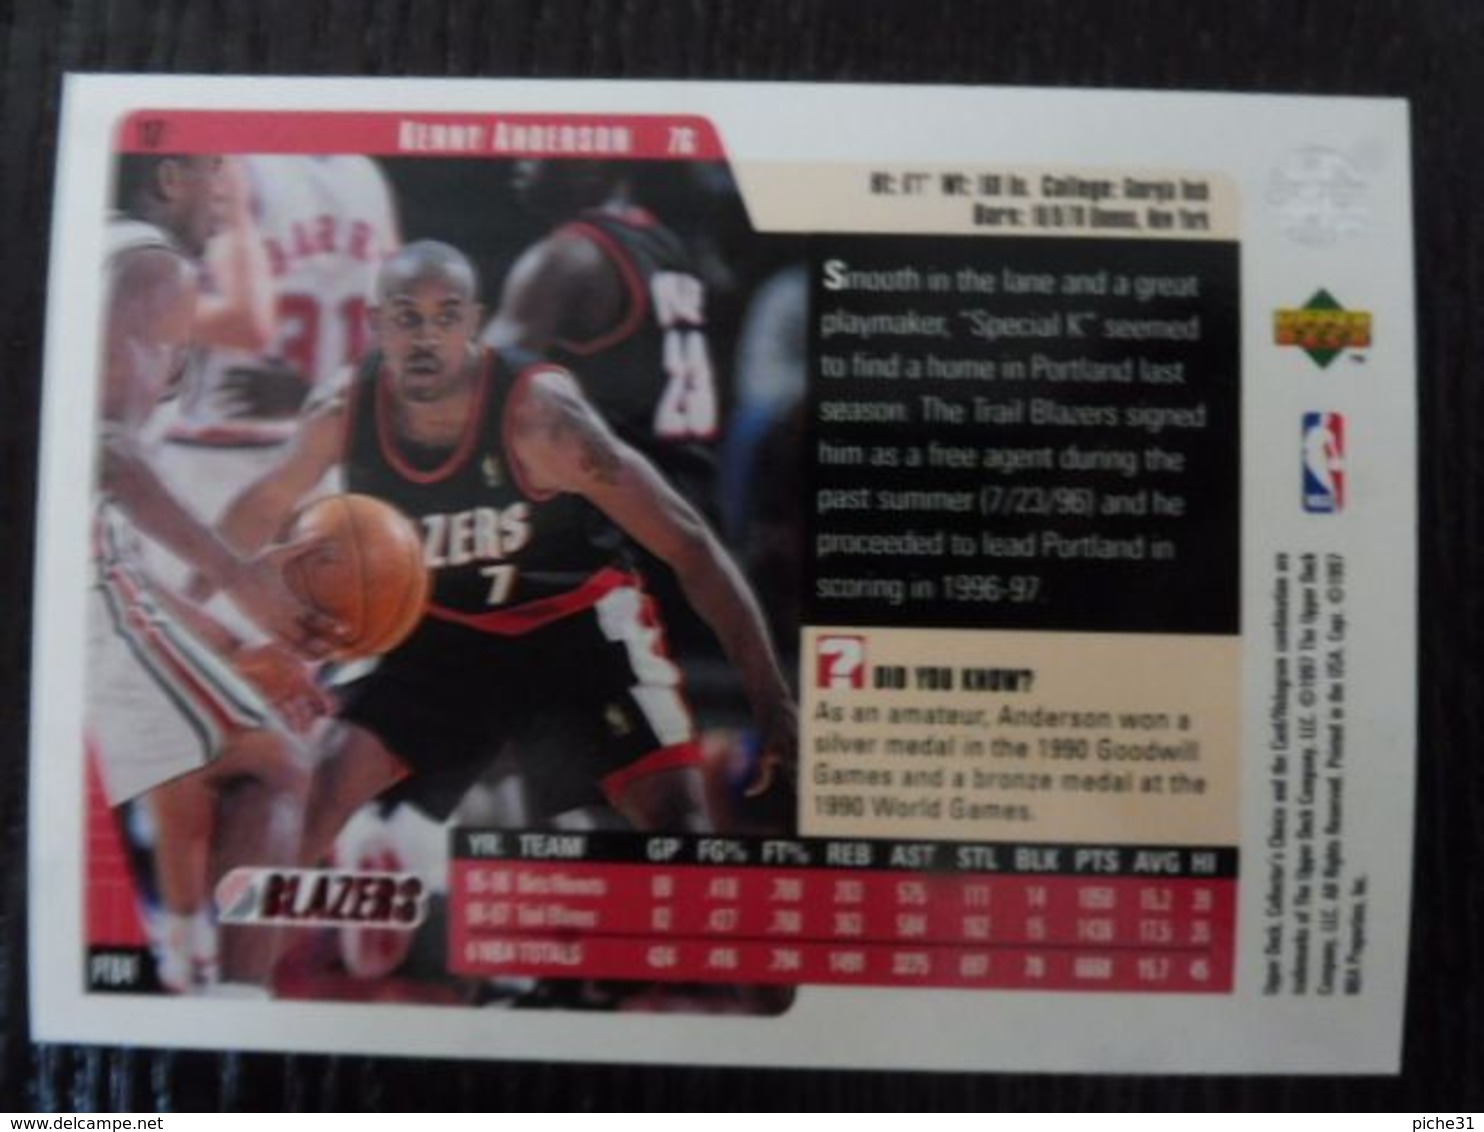 NBA - UPPER DECK 1997 - BLAZER - KENNY ANDERSON - 1990-1999